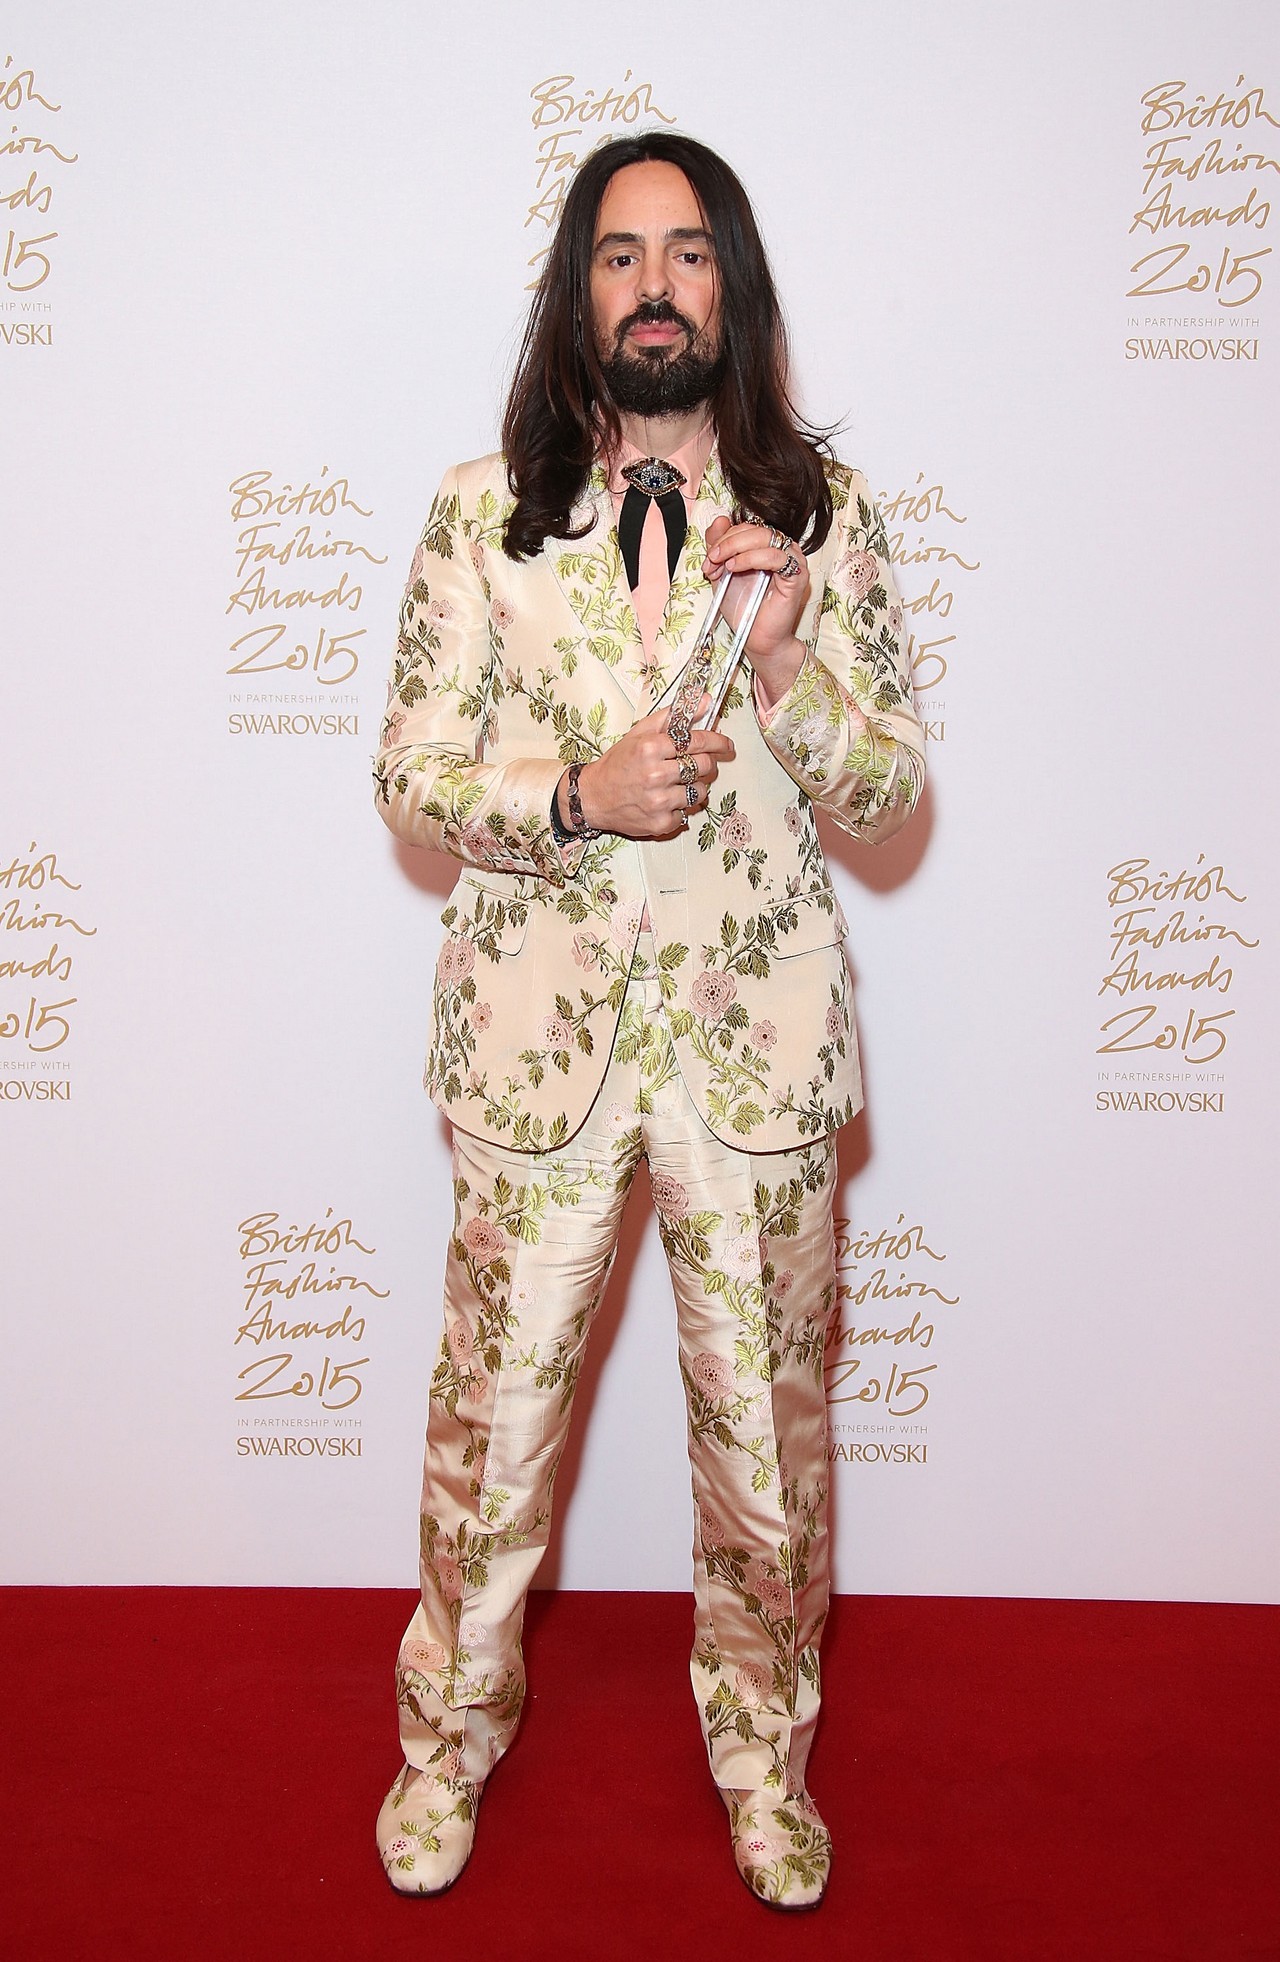 British Fashion Awards 2015: Alessandro Michele è International Designer 2015, il red carpet con Lady Gaga, Rita Ora e Salma Hayek